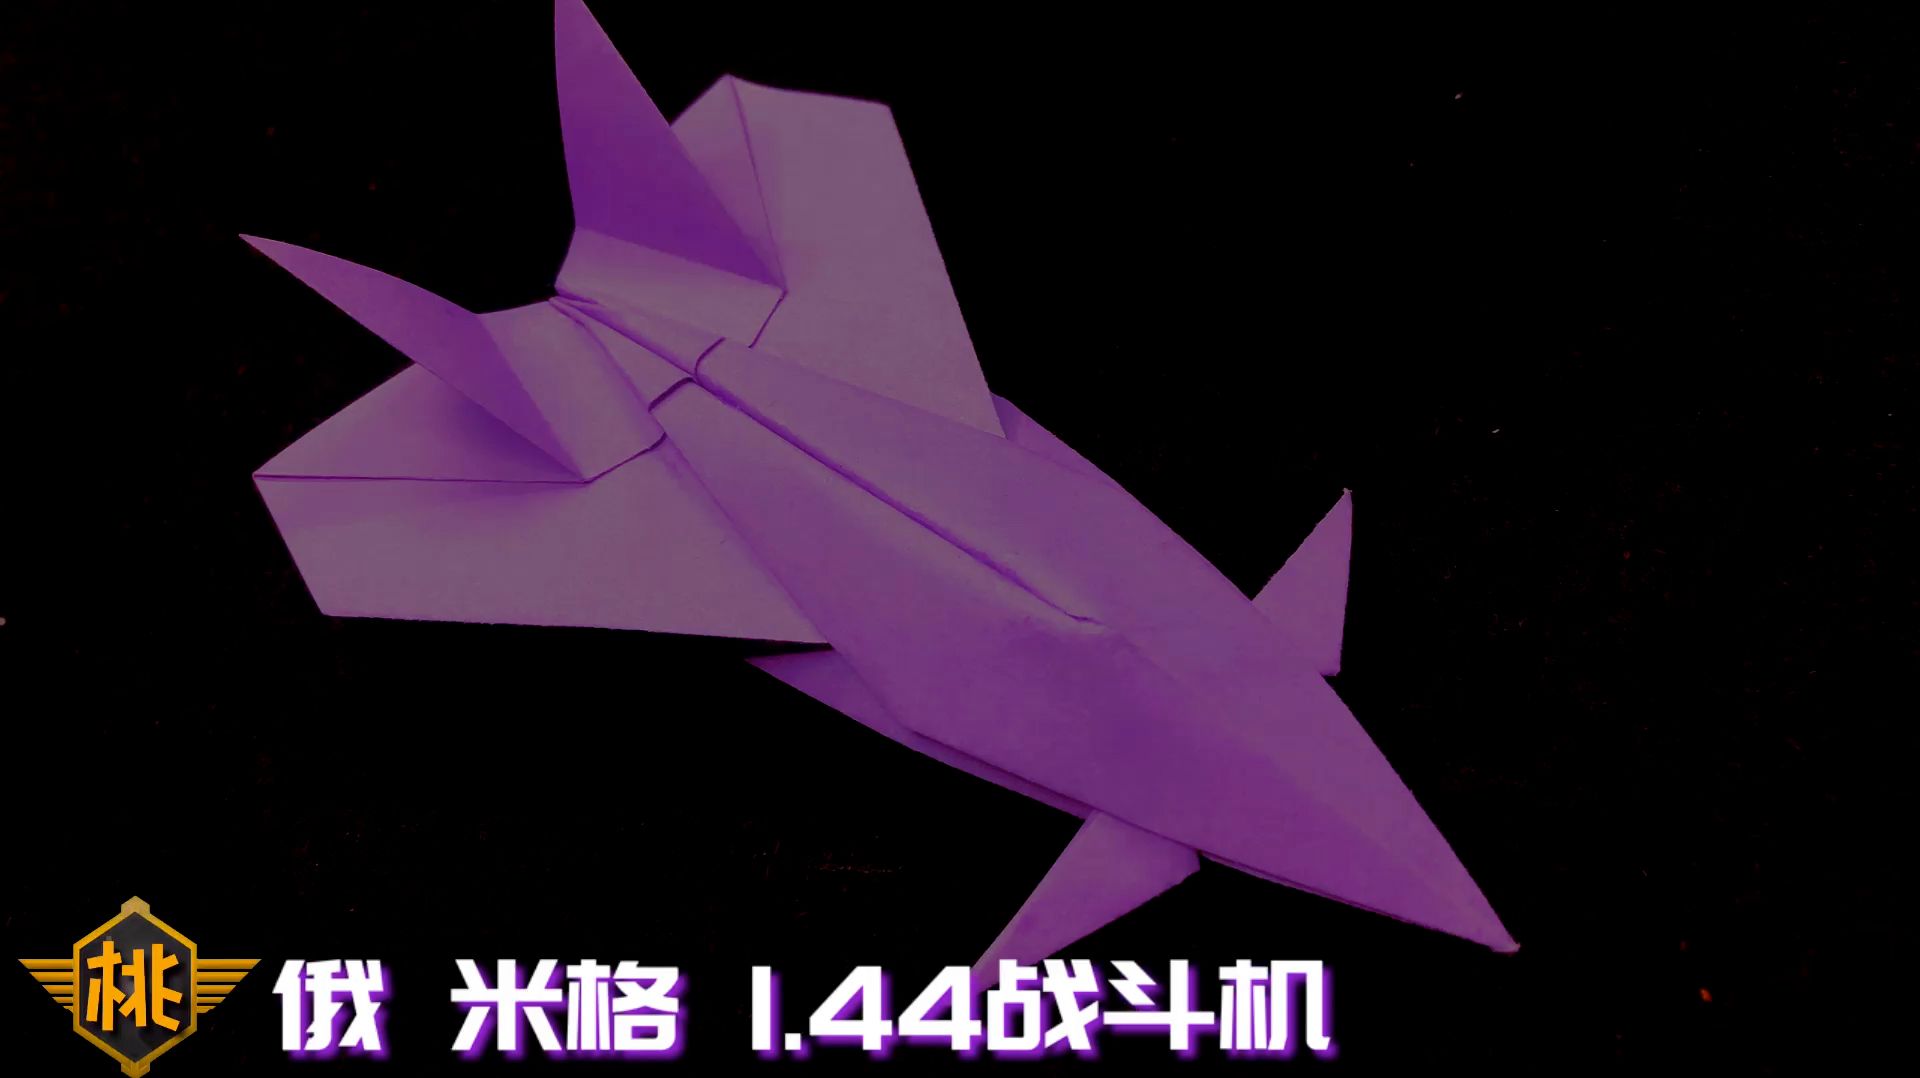 [纸飞机怎么做一步教]纸飞机怎么做一步教程图片